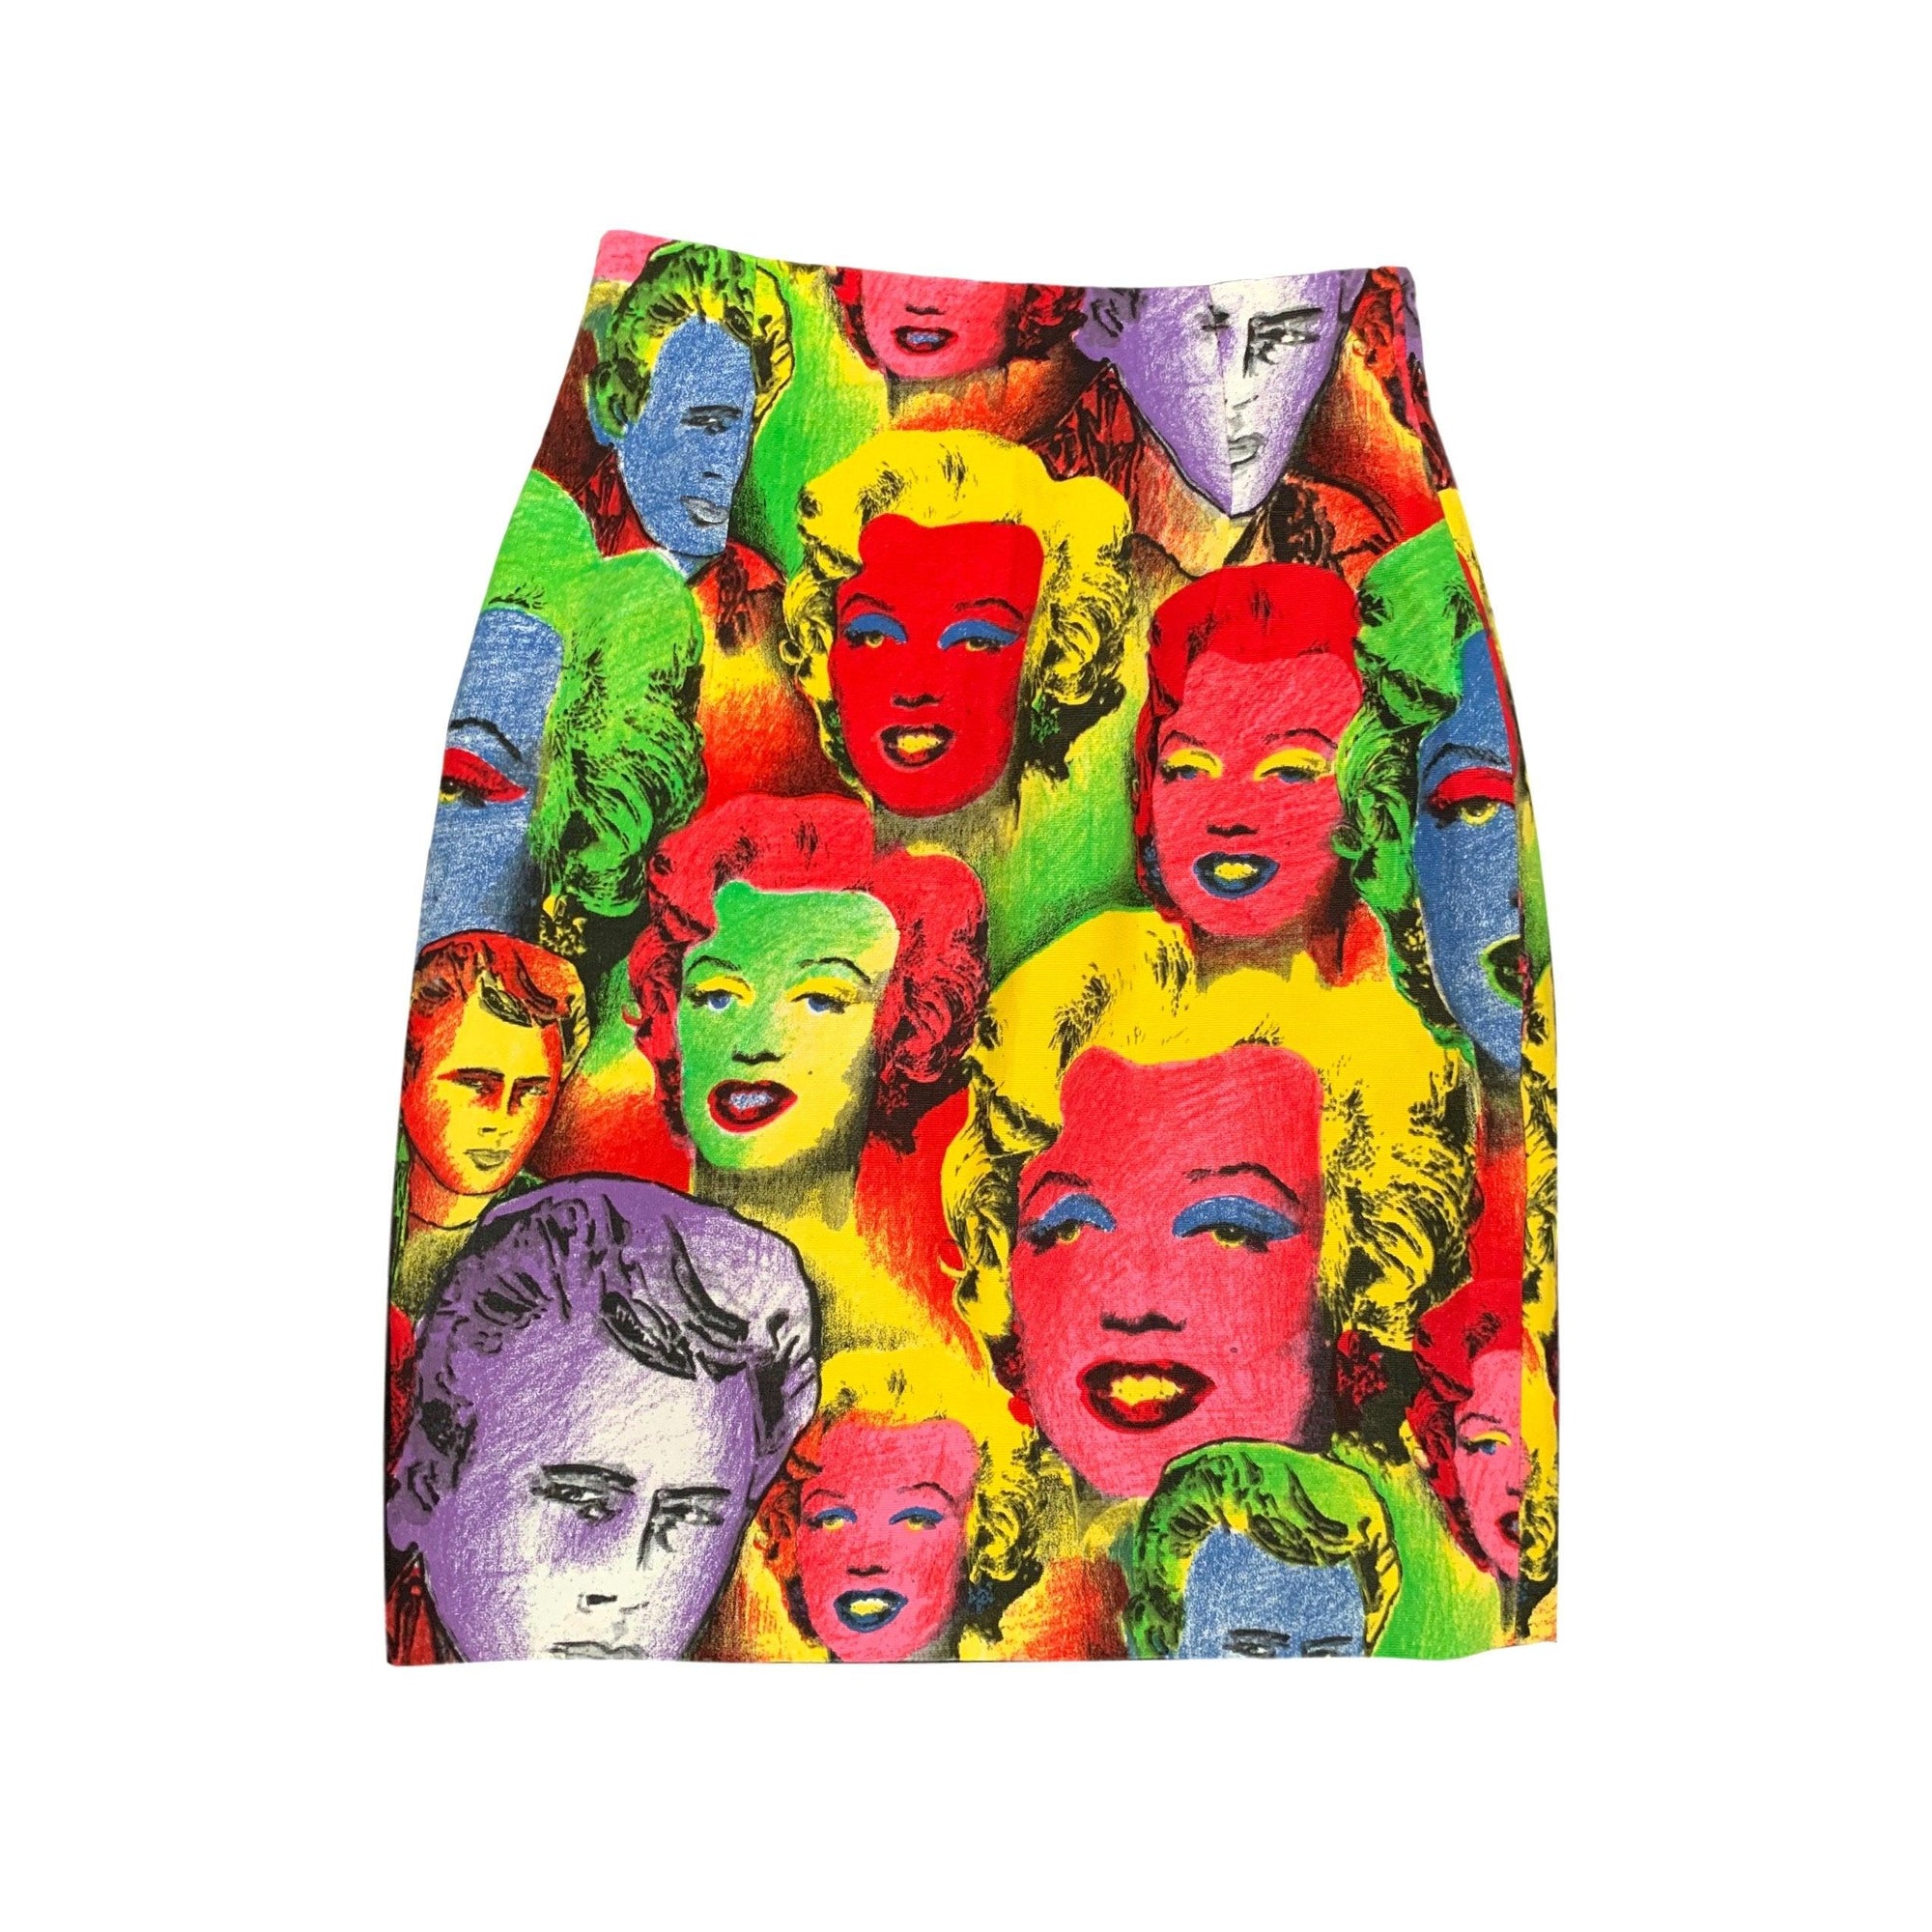 Versace Pop Art Print Skirt - Apparel